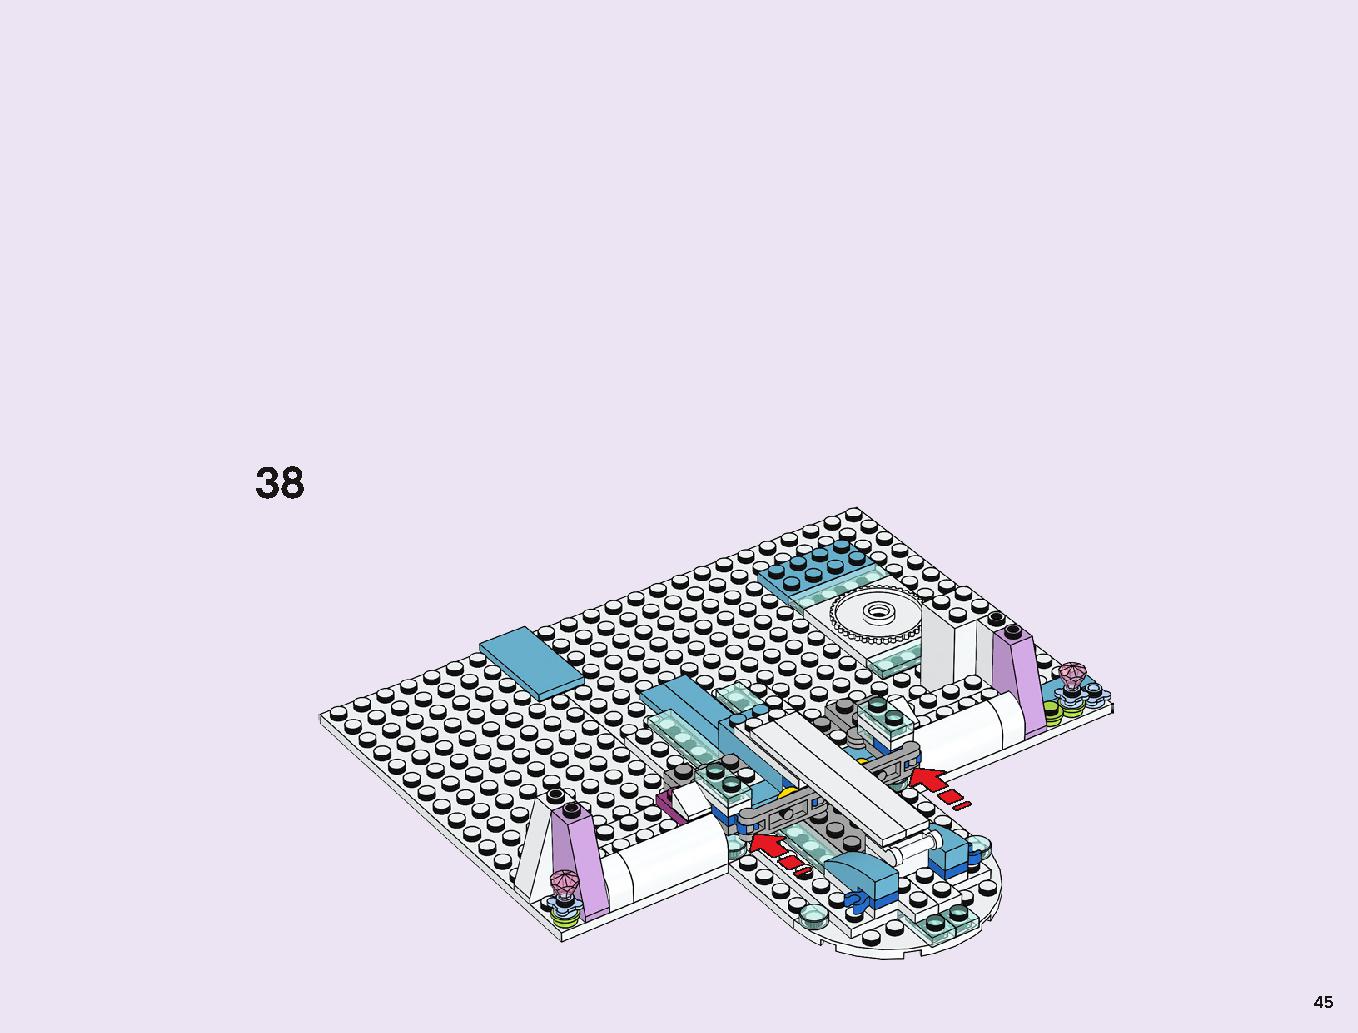 アナと雪の女王 “アイスキャッスル・ファンタジー” 43172 レゴの商品情報 レゴの説明書・組立方法 45 page